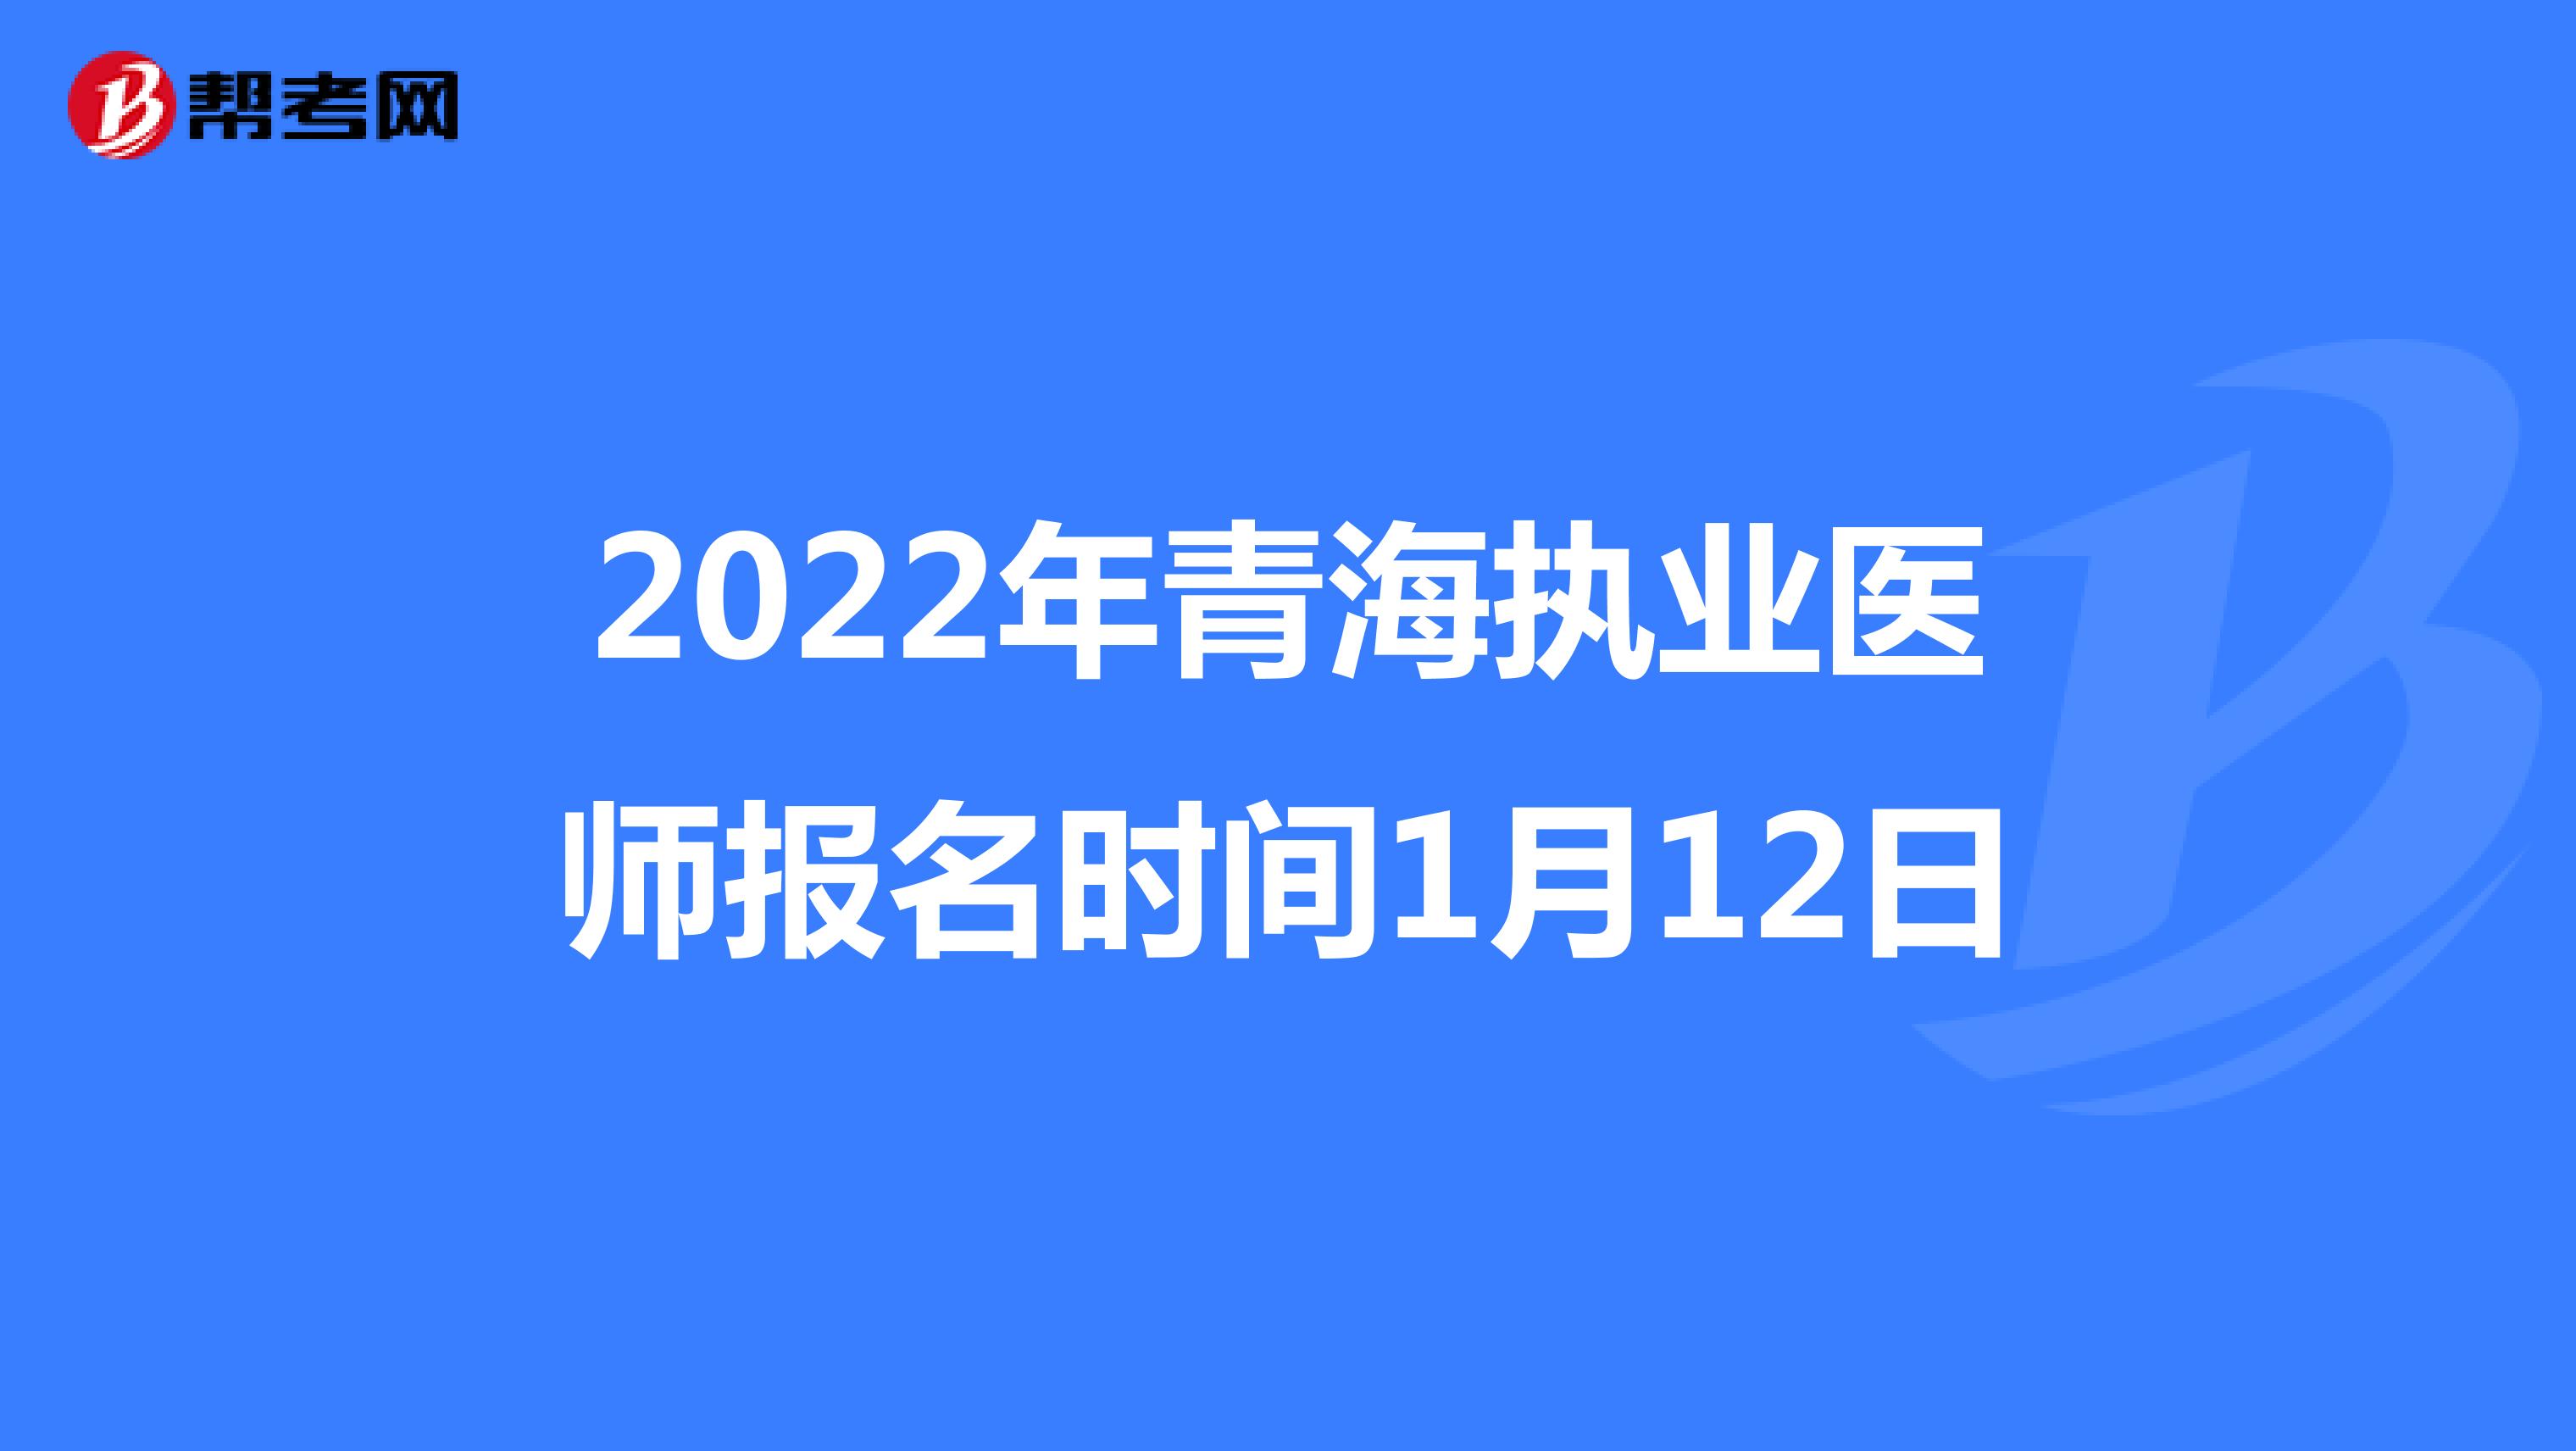 2022年青海执业医师报名时间1月12日